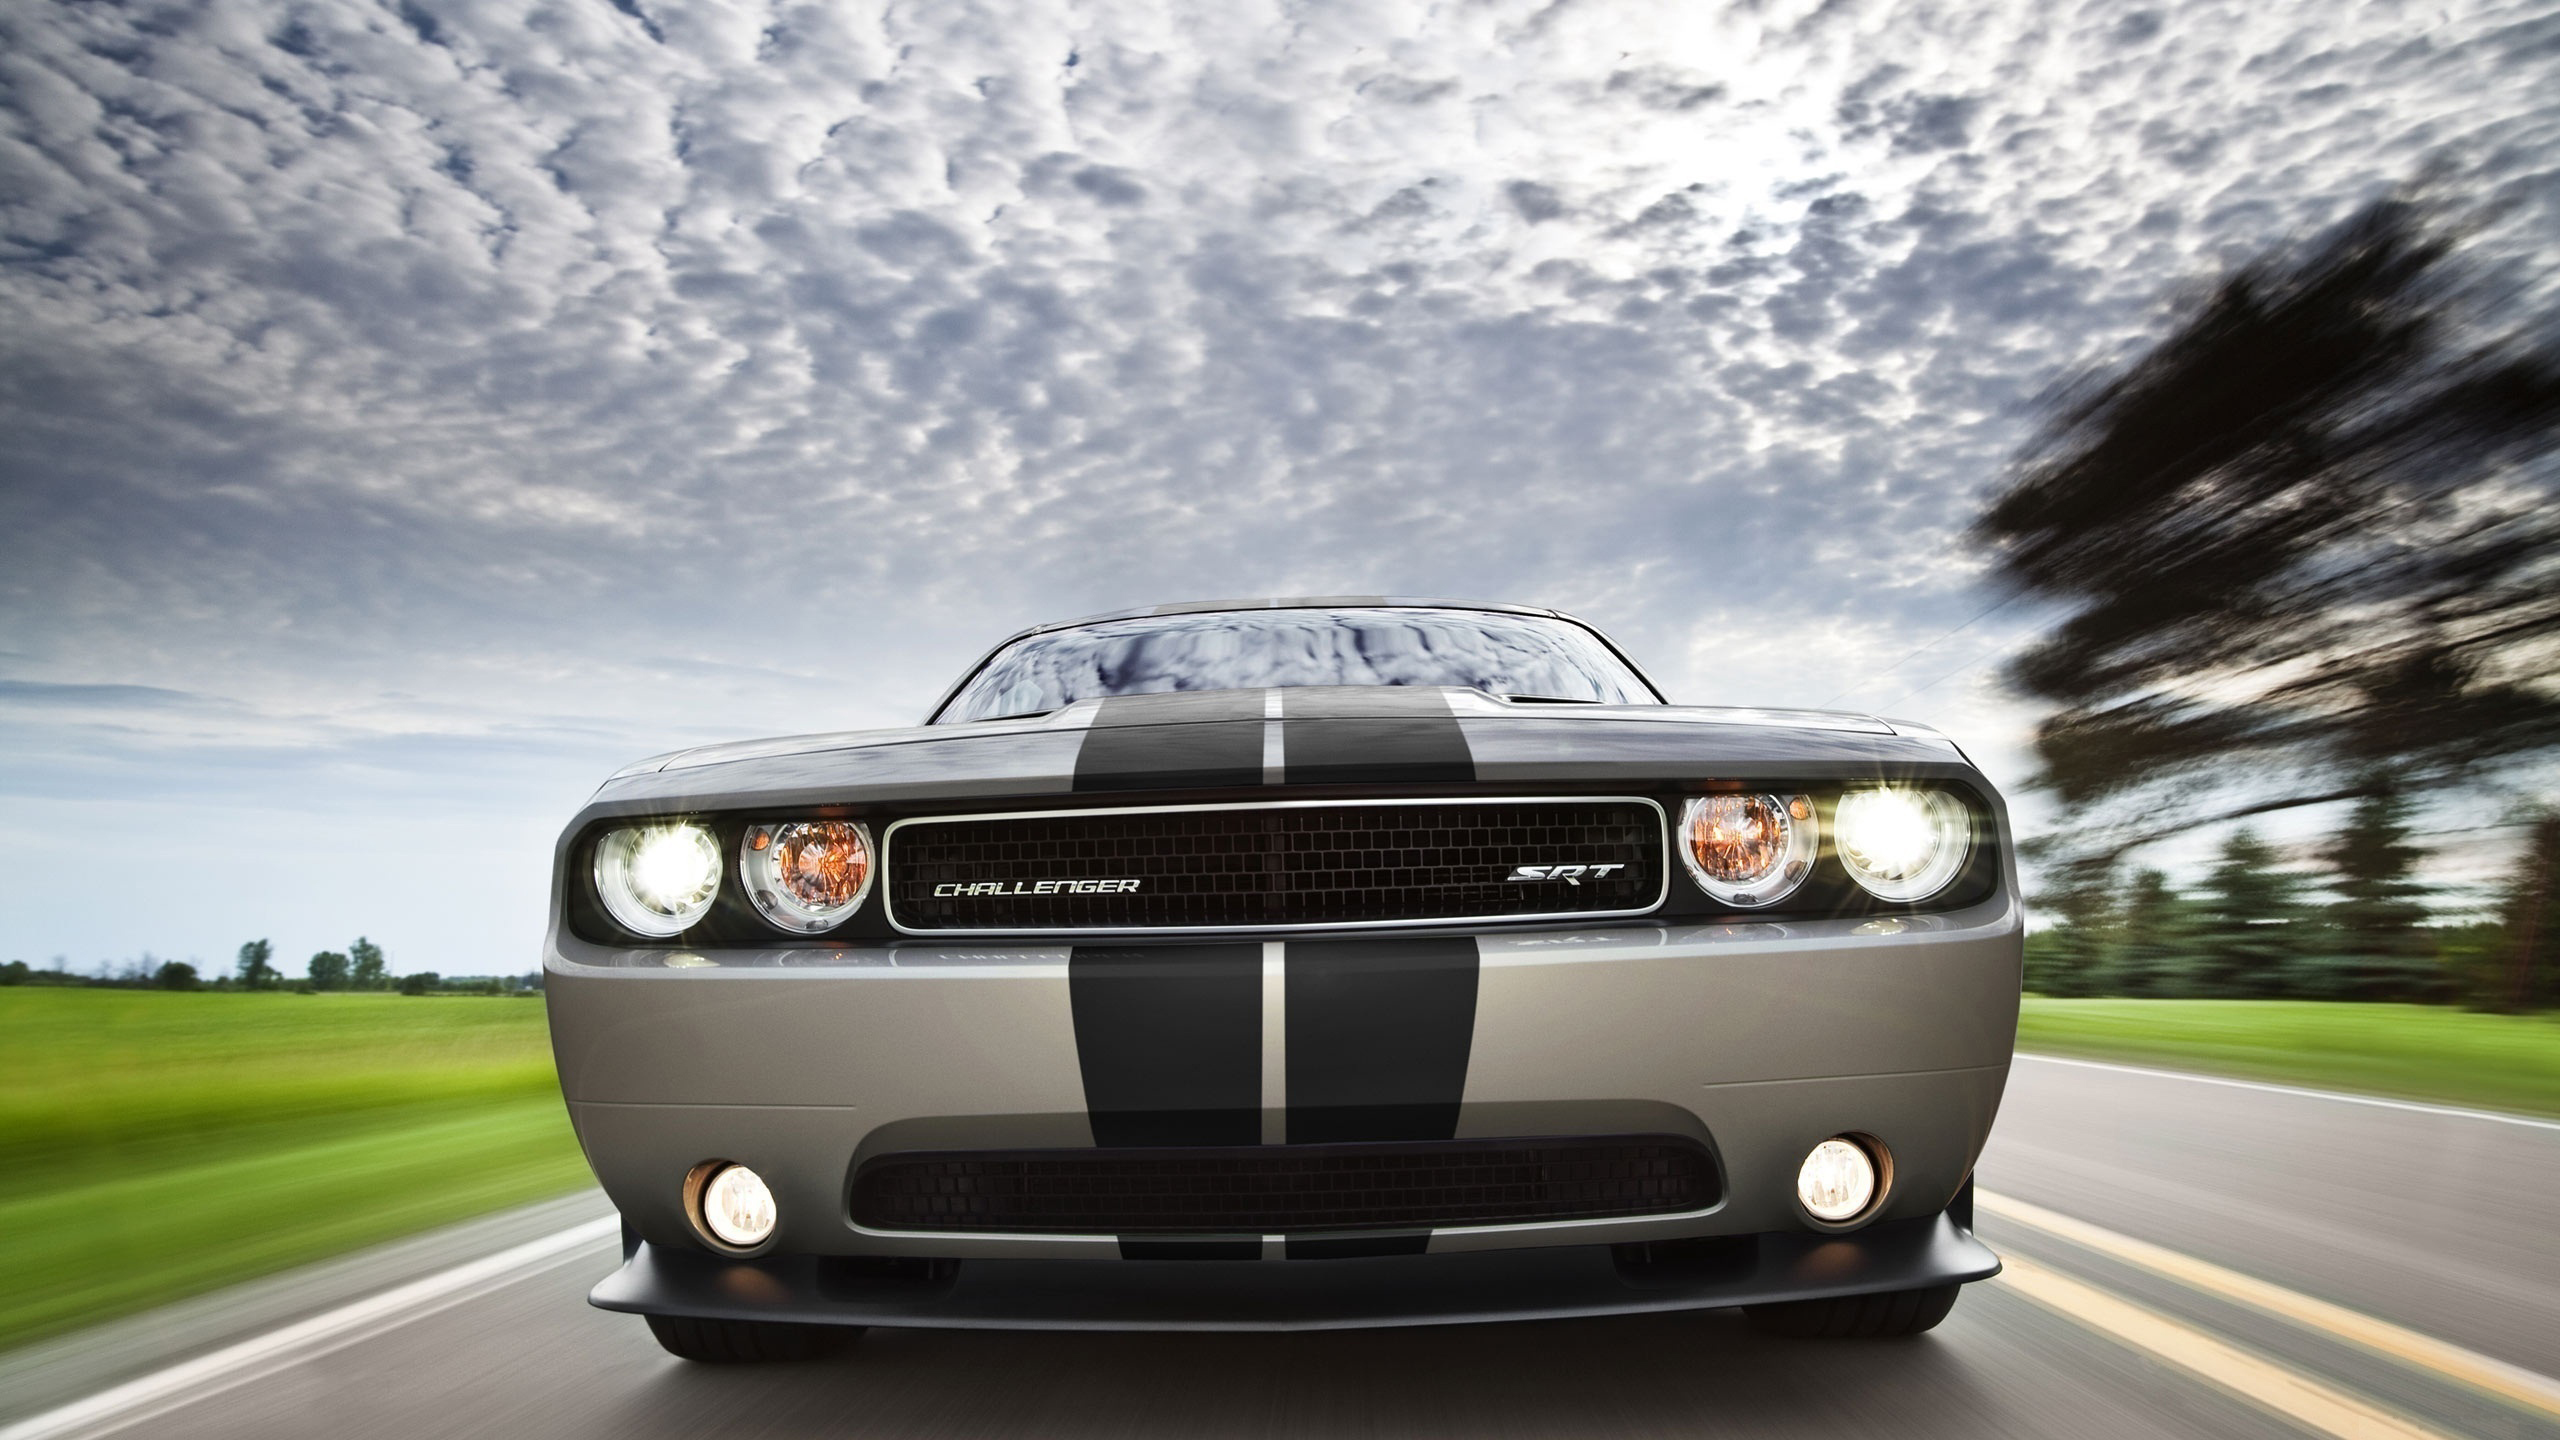 Vehicles Dodge Challenger SRT HD Wallpaper | Background Image